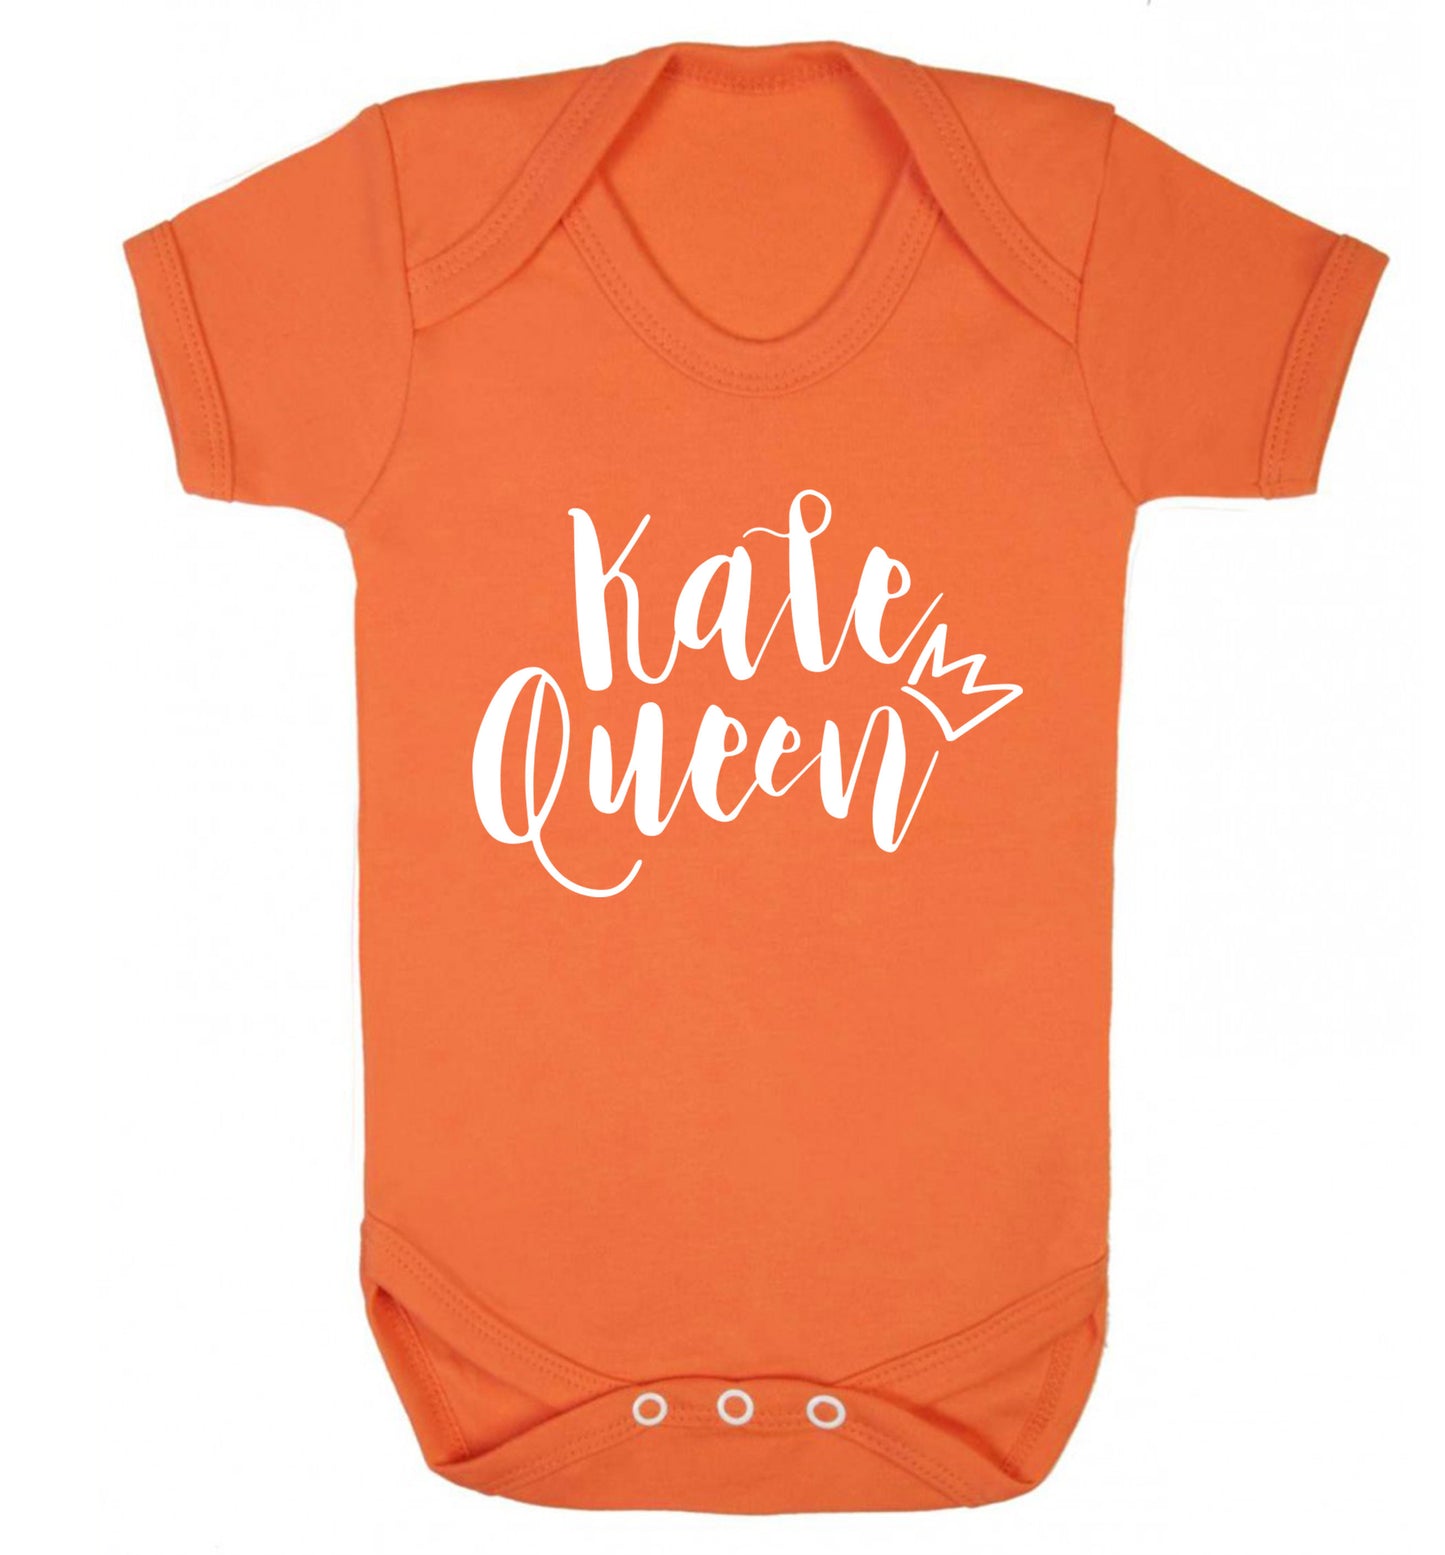 Kale Queen Baby Vest orange 18-24 months